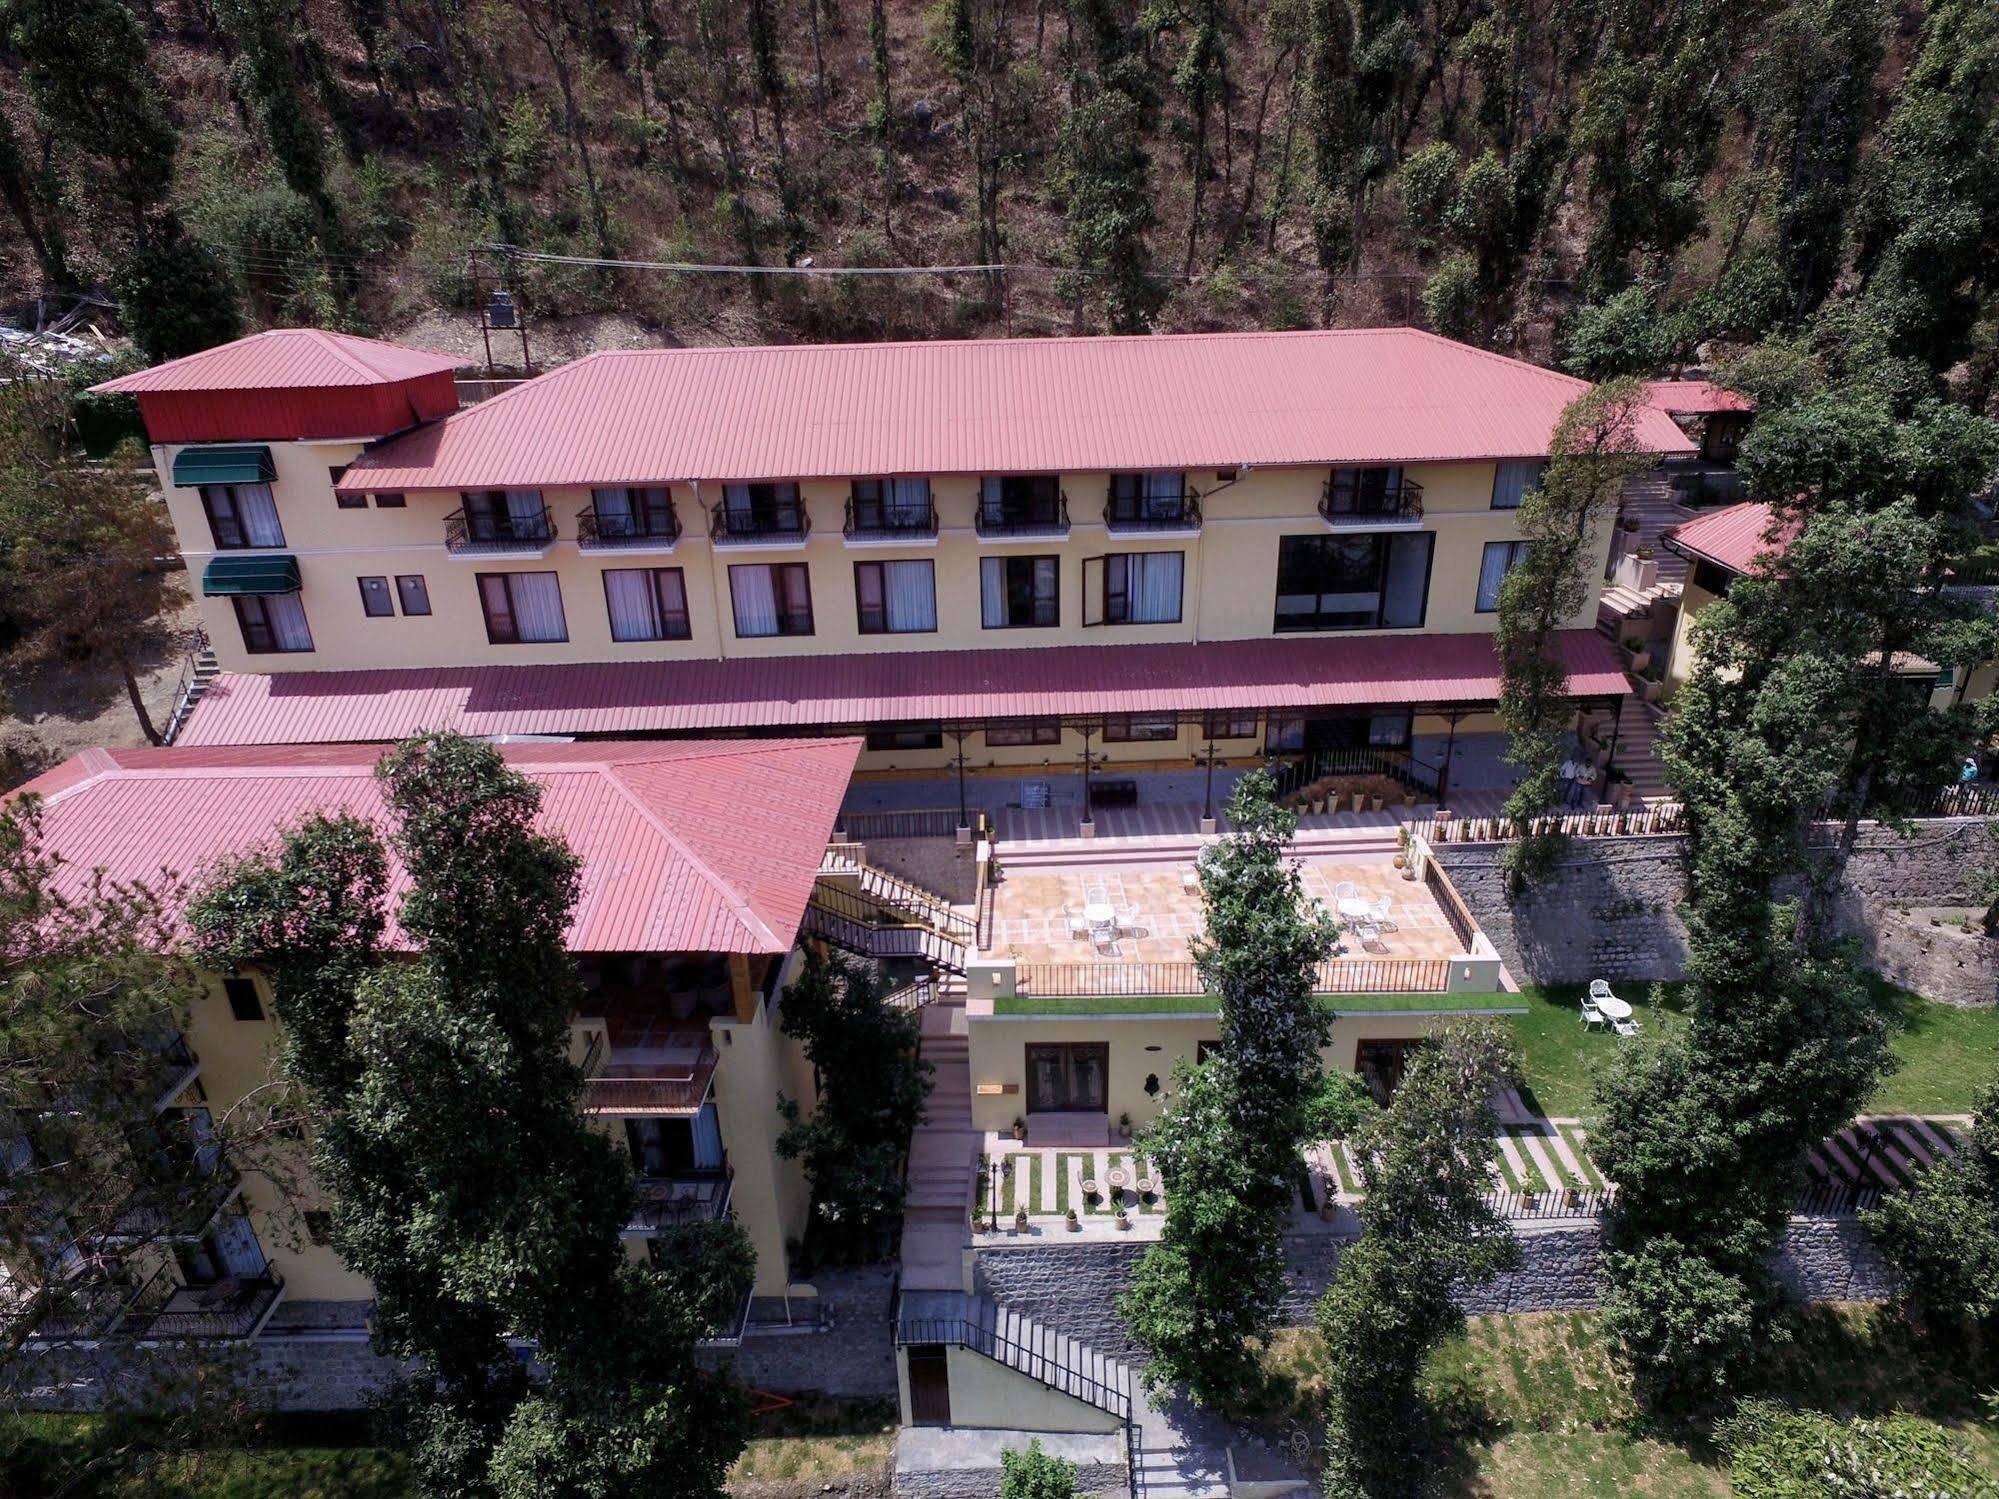 The Fern Hillside Resort Bhimtal Exterior photo